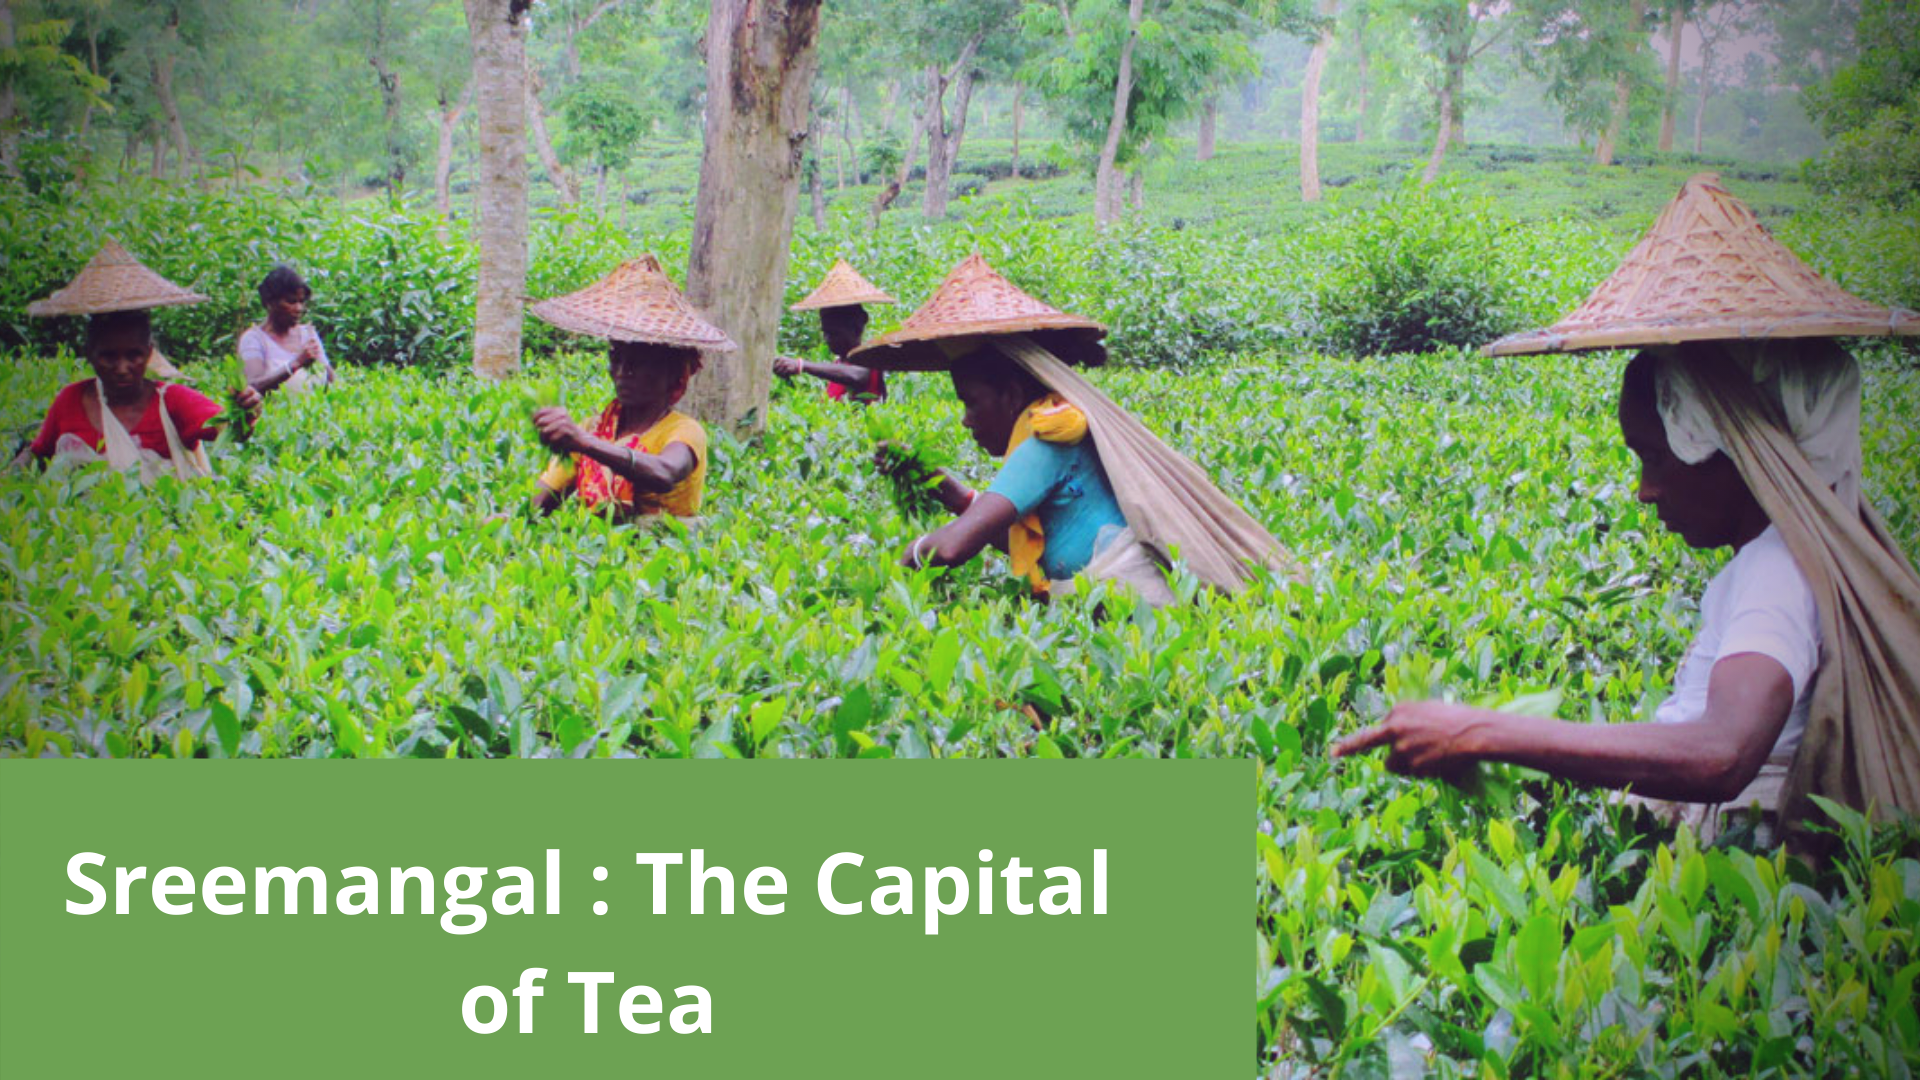 "Sreemangal": The Capital of Tea